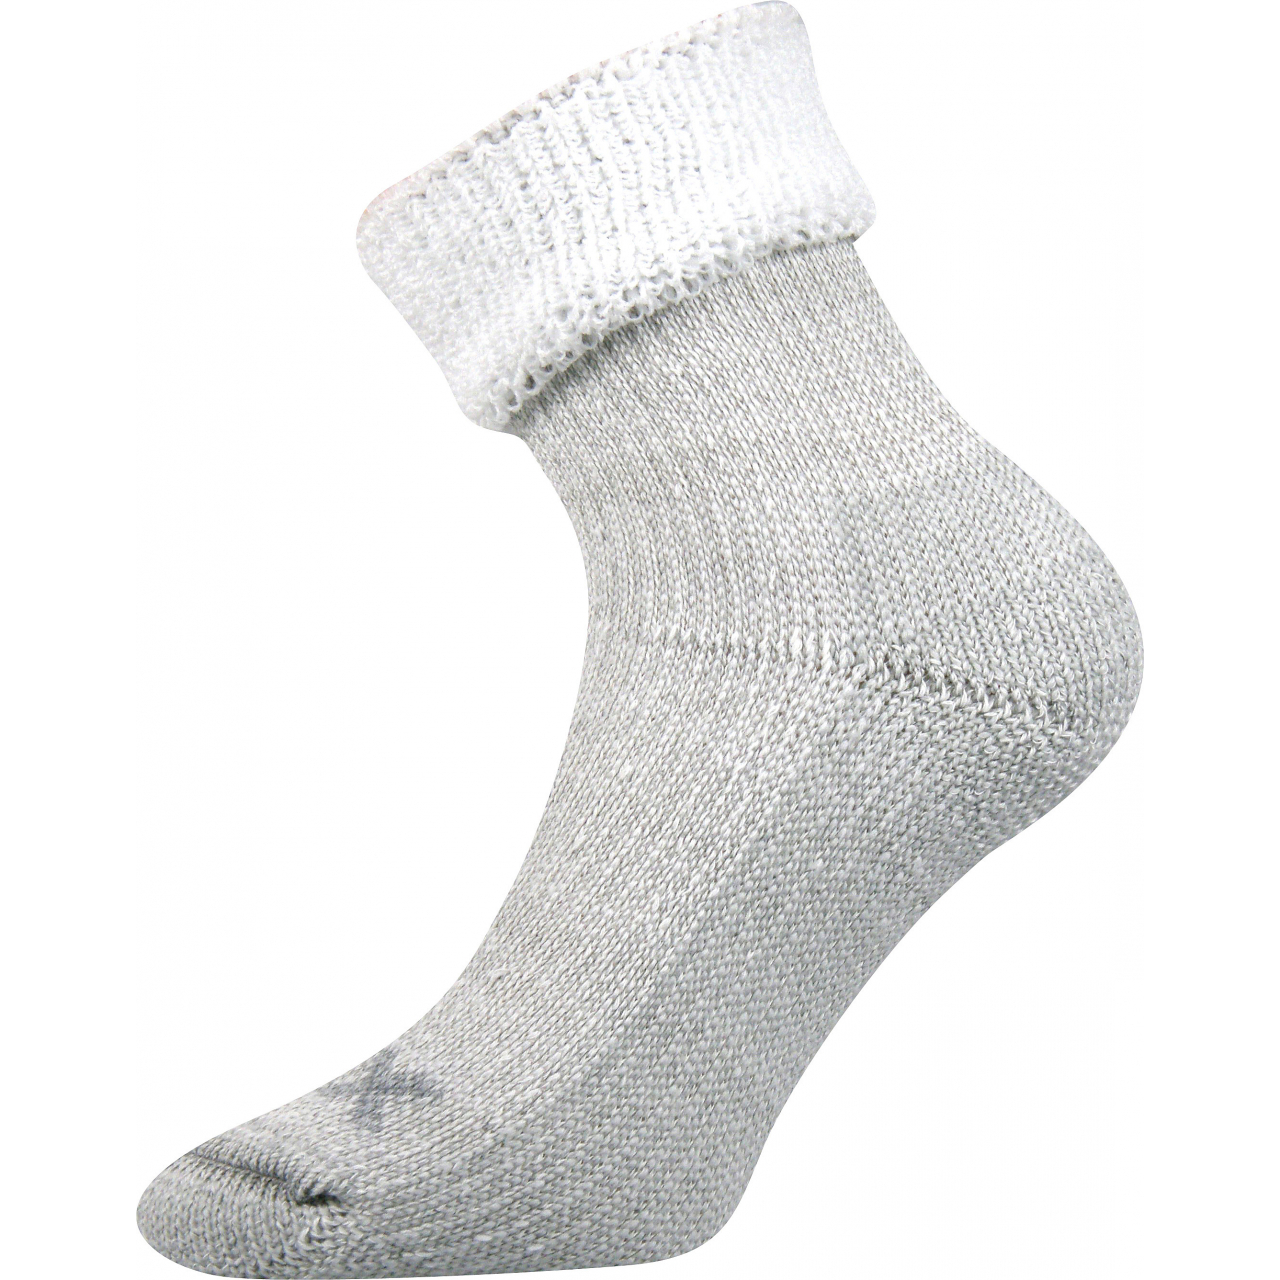 Ponožky dámské termo Voxx Quanta - šedé-bílé, 39-42